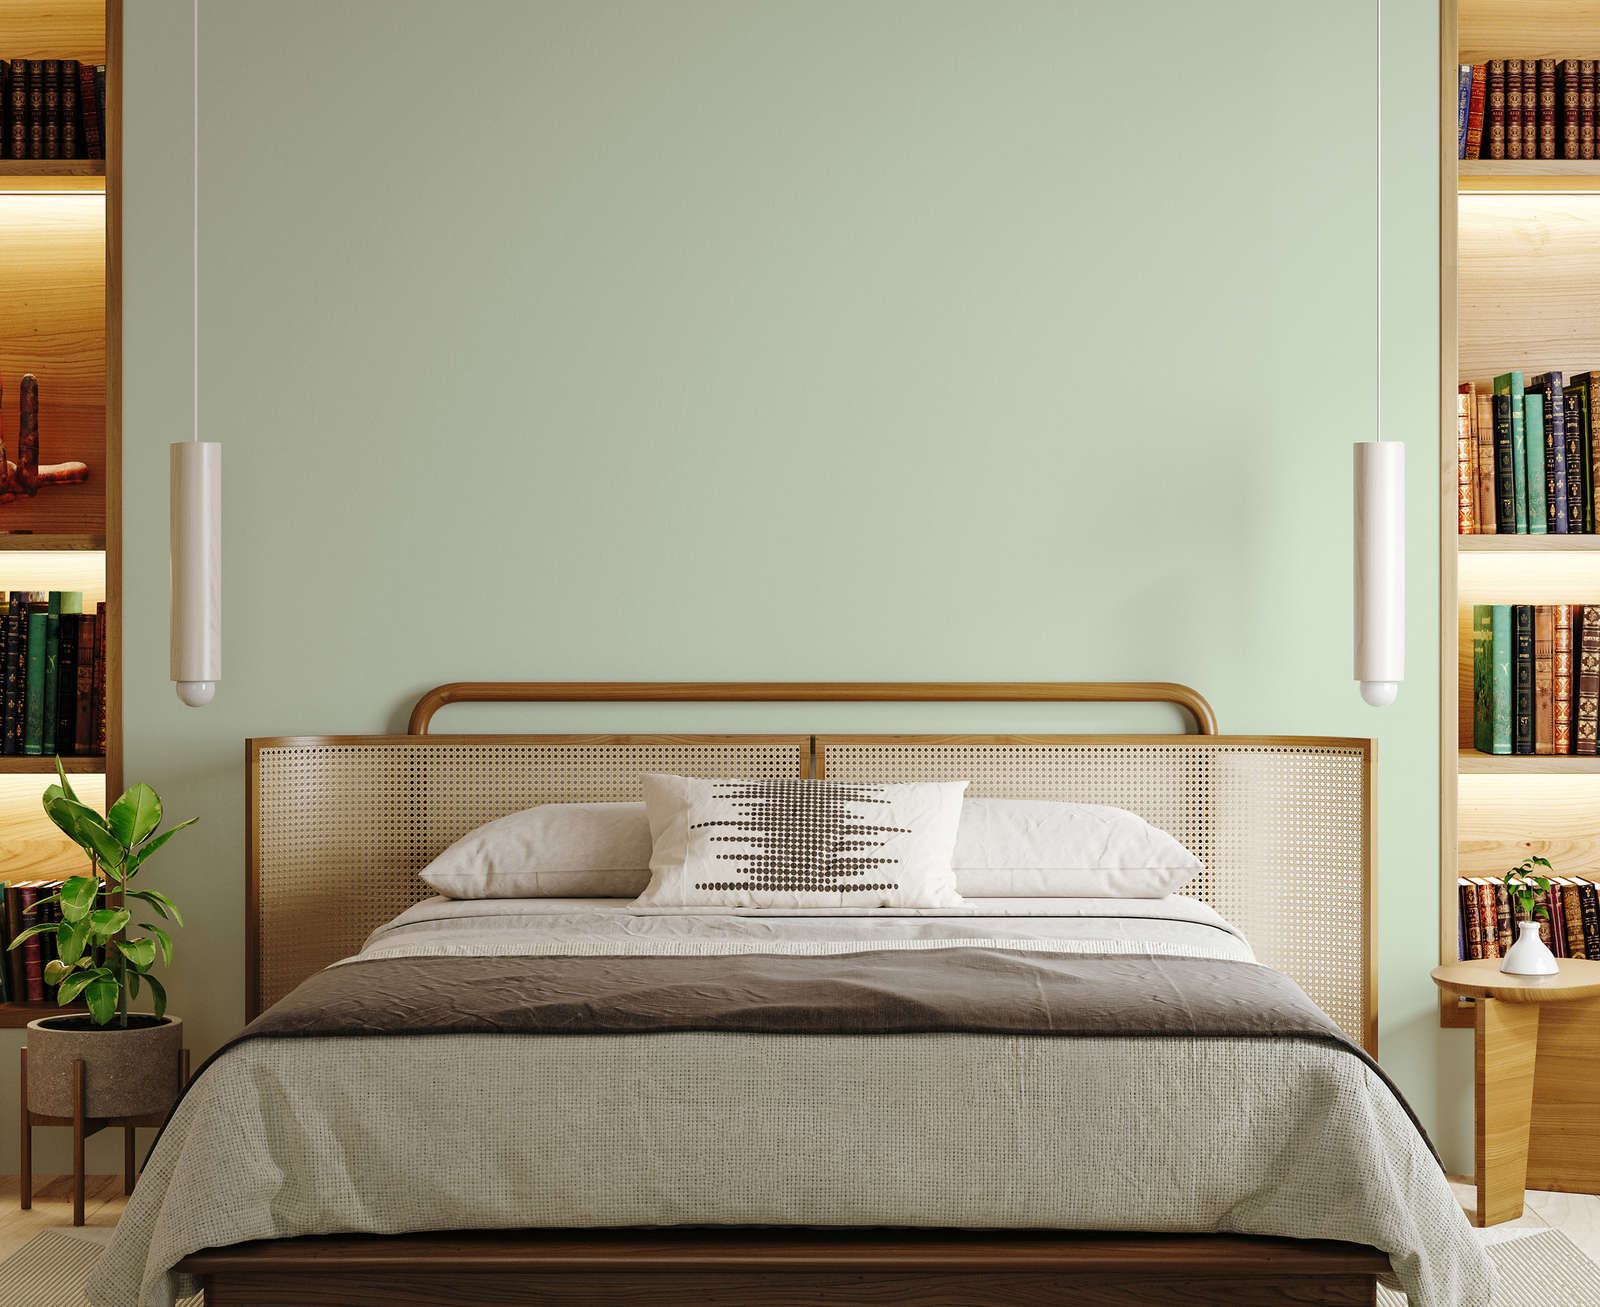             Premium Wandfarbe aufweckendes Pastellgrün »Sweet Sage« NW400 – 1 Liter
        